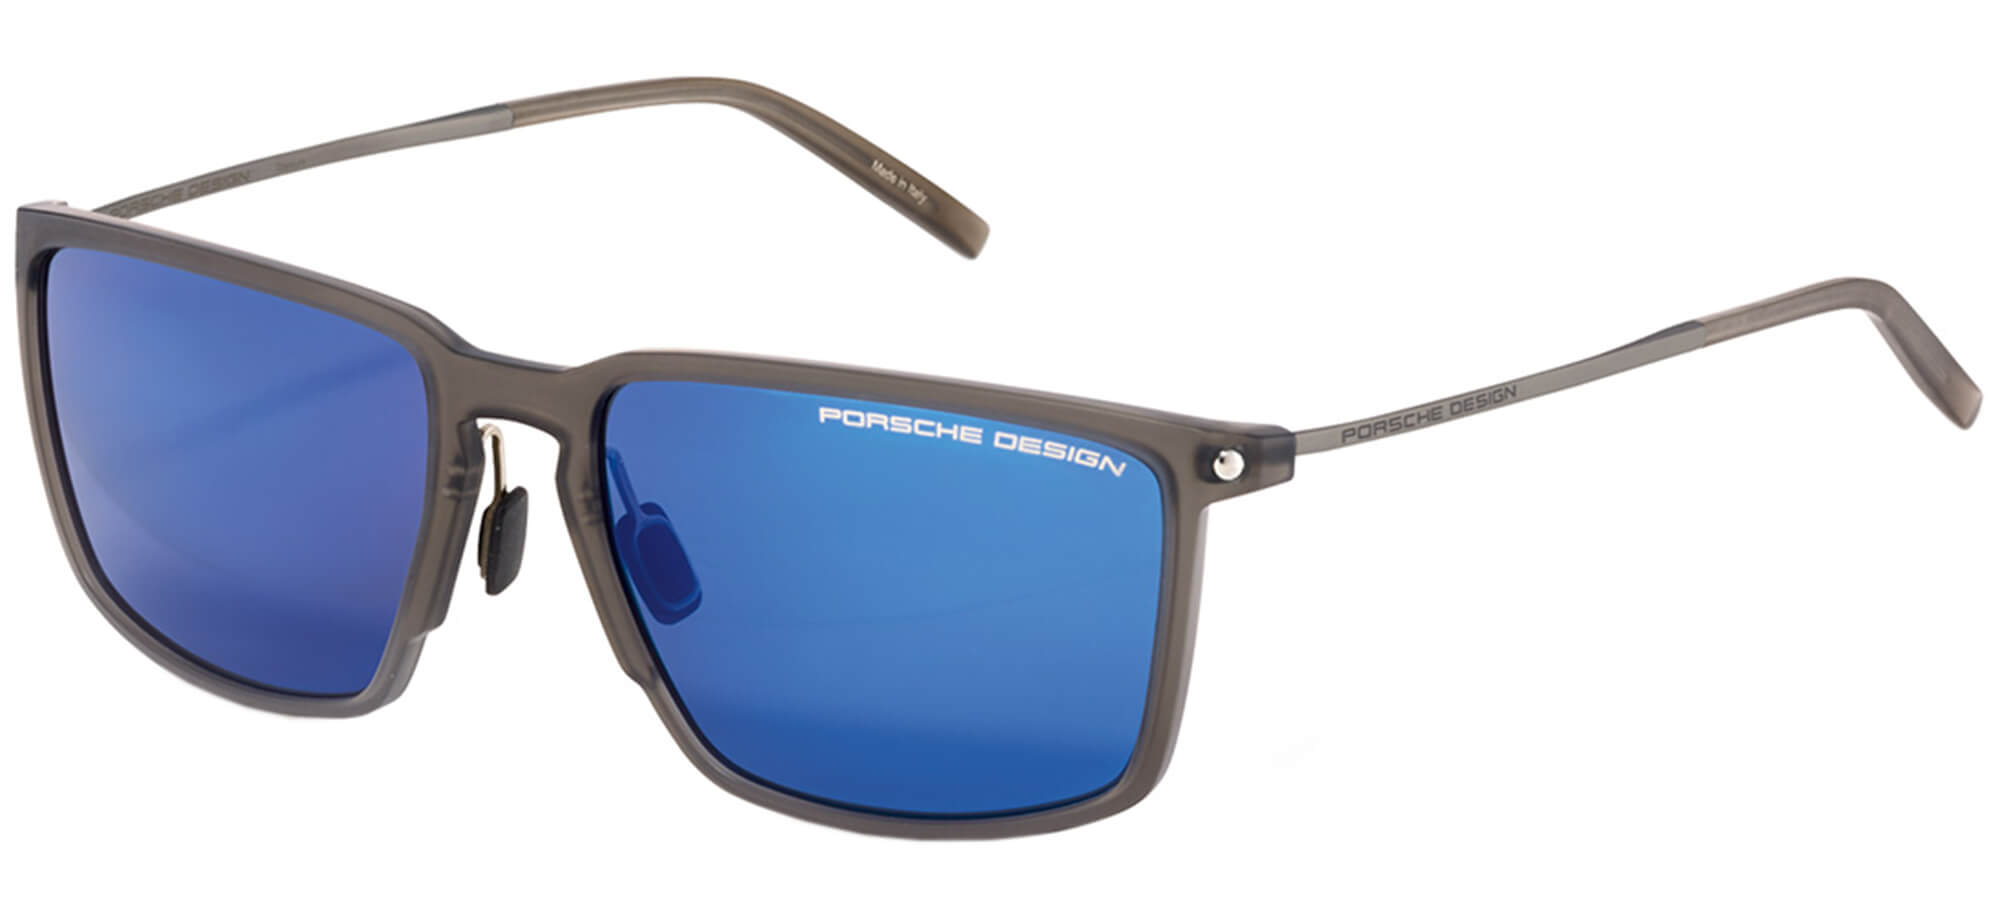 Porsche DesignP'8661Grey/blue (D VB)